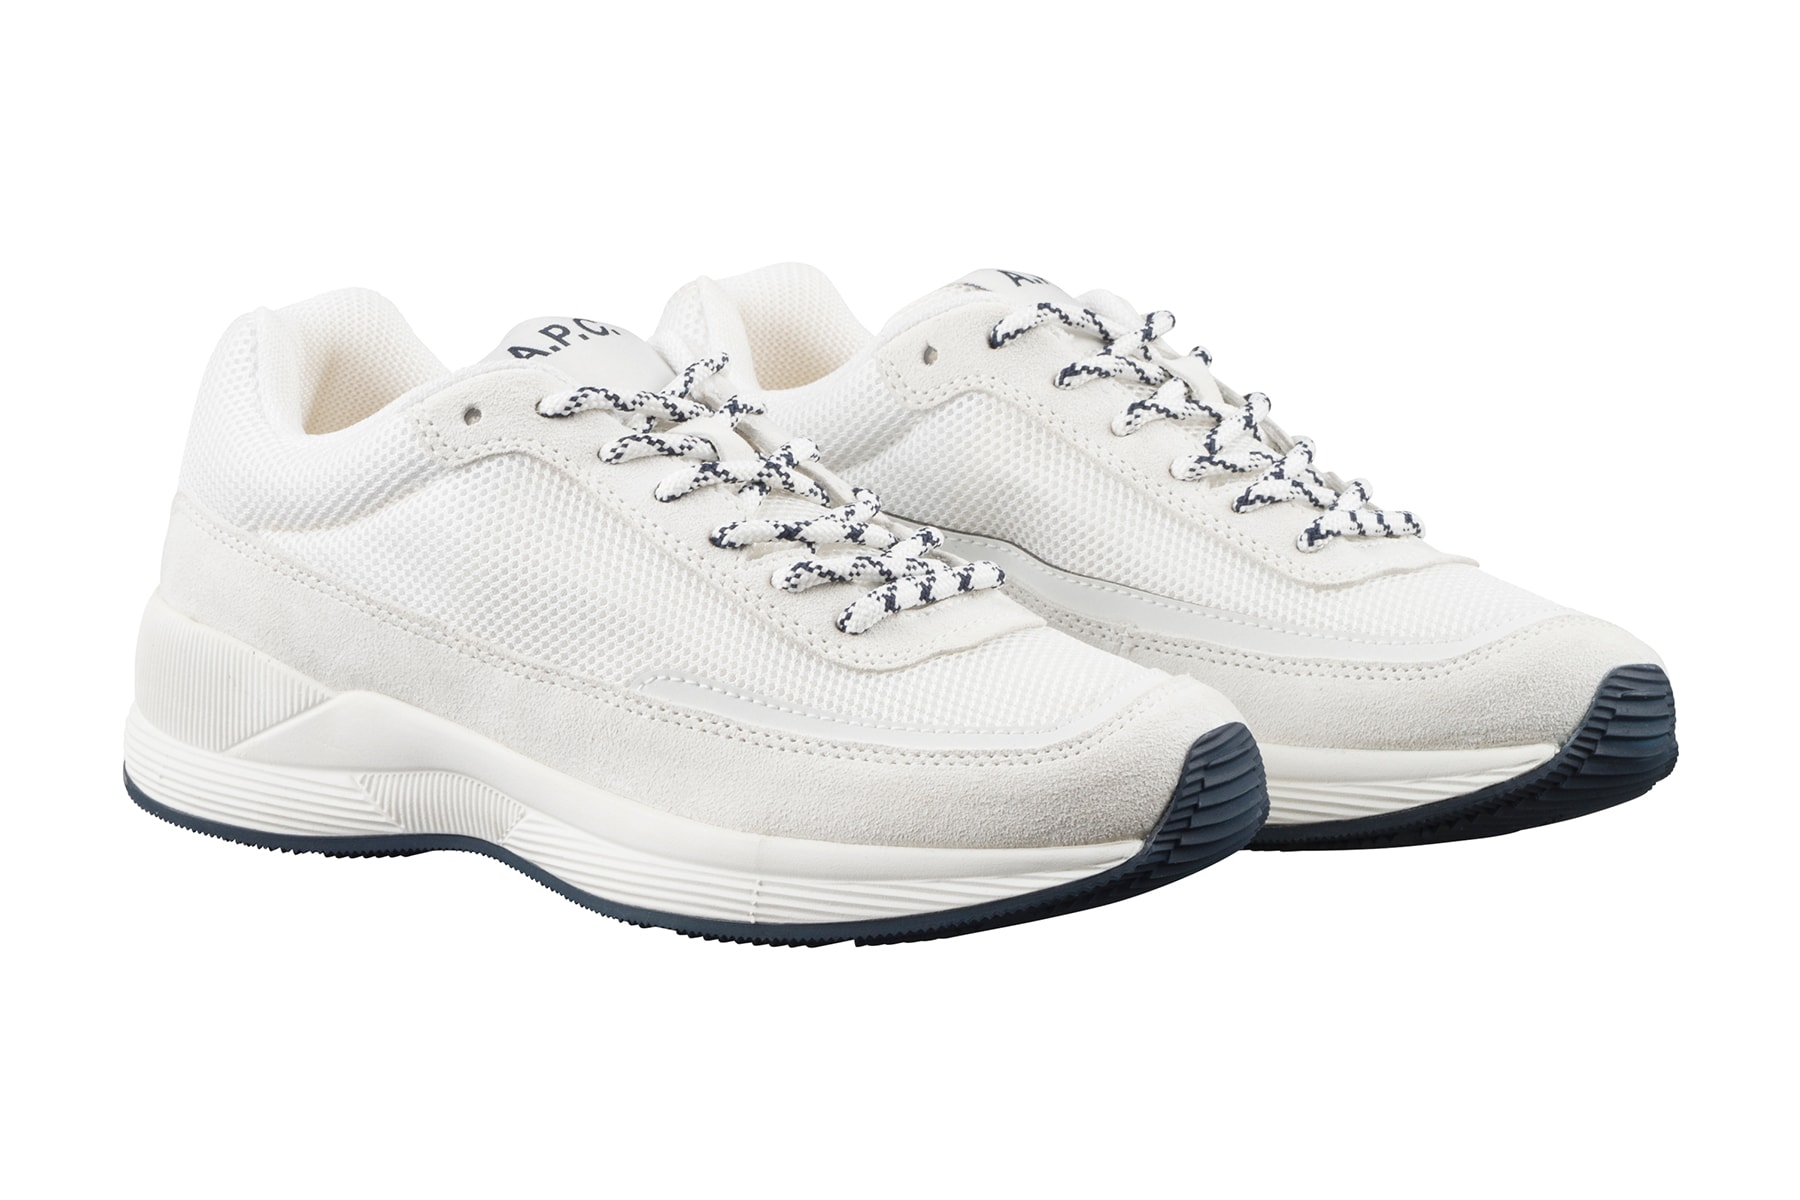 A.P.C. Sneaker Women Minimalist Dad Chunky Release Price Paris Colorway White Beige Trend Jean Touitou Spring 2018 White